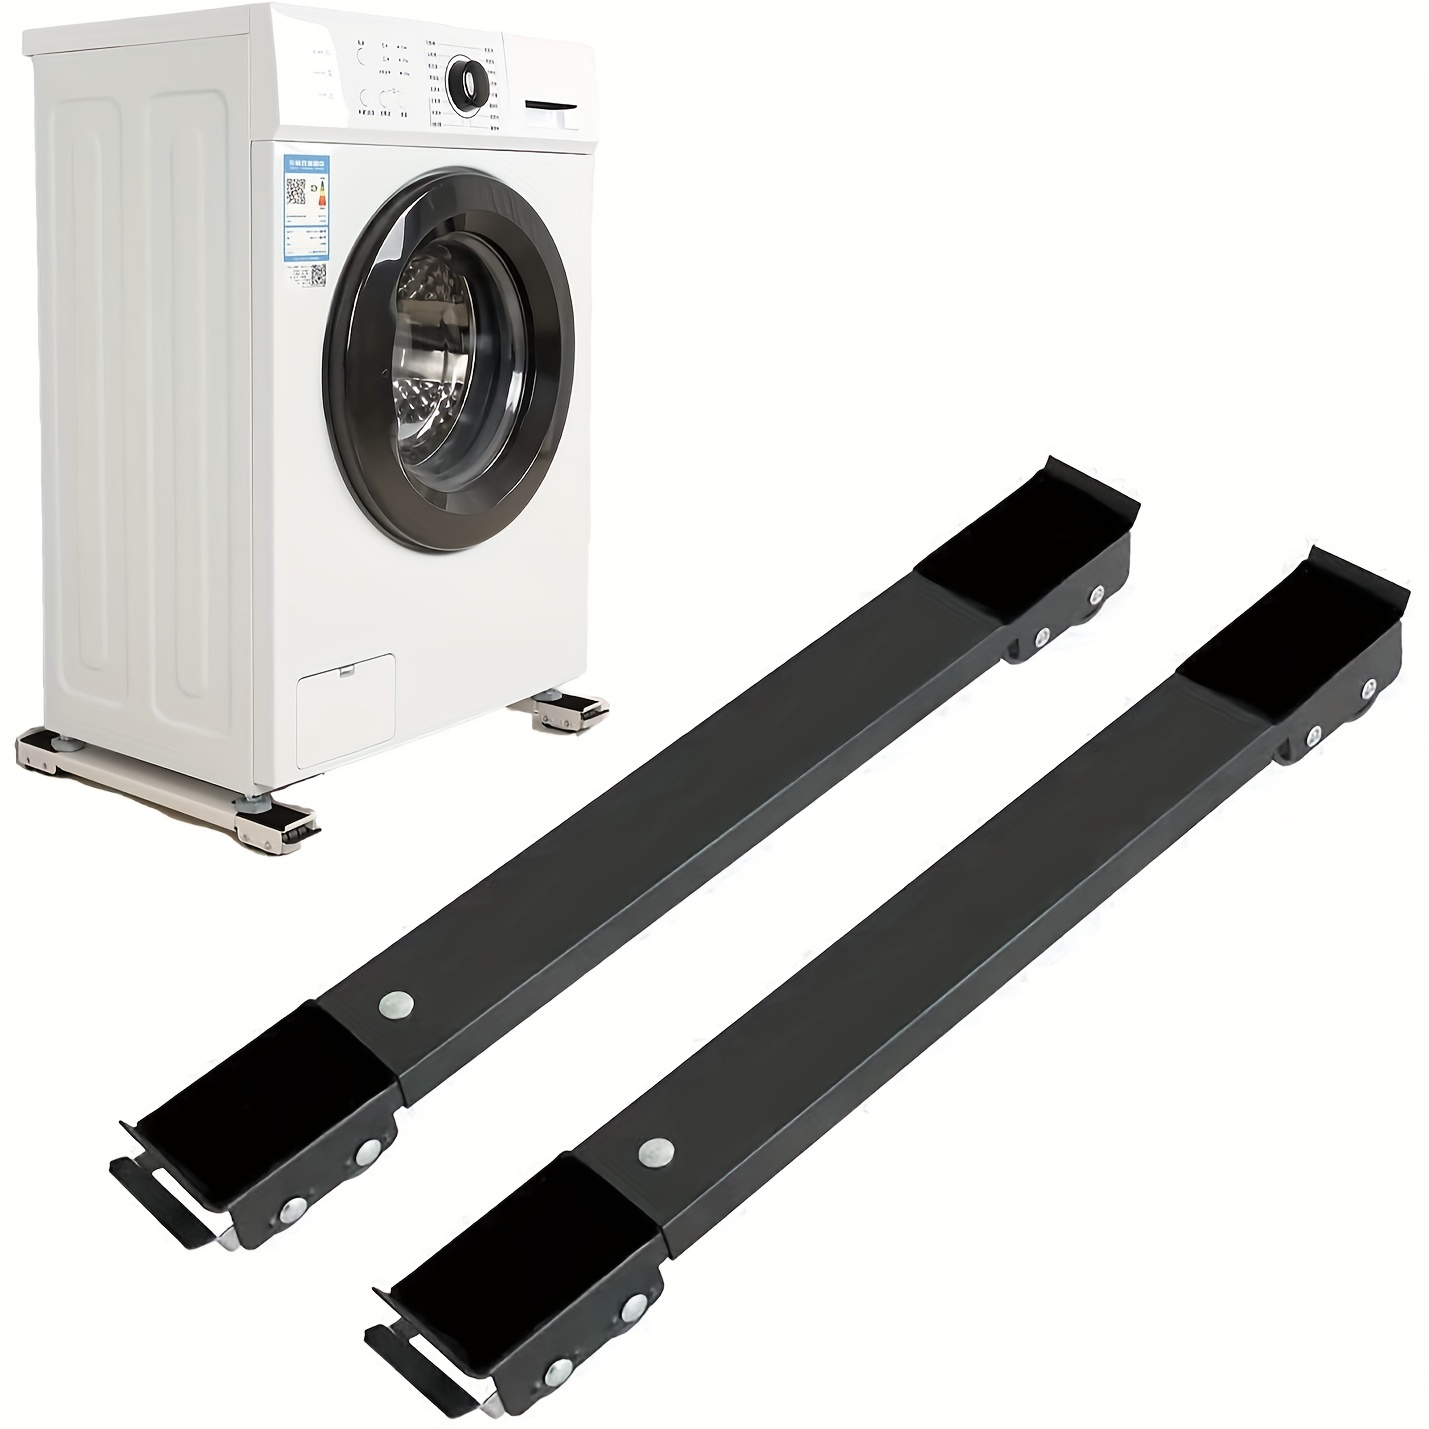  Dos bases de soporte para lavadora móvil ajustables con ruedas,  rodillo de electrodomésticos resistente, adecuado para base de  refrigerador, base de secadora, base de lavadora (blanco) :  Electrodomésticos